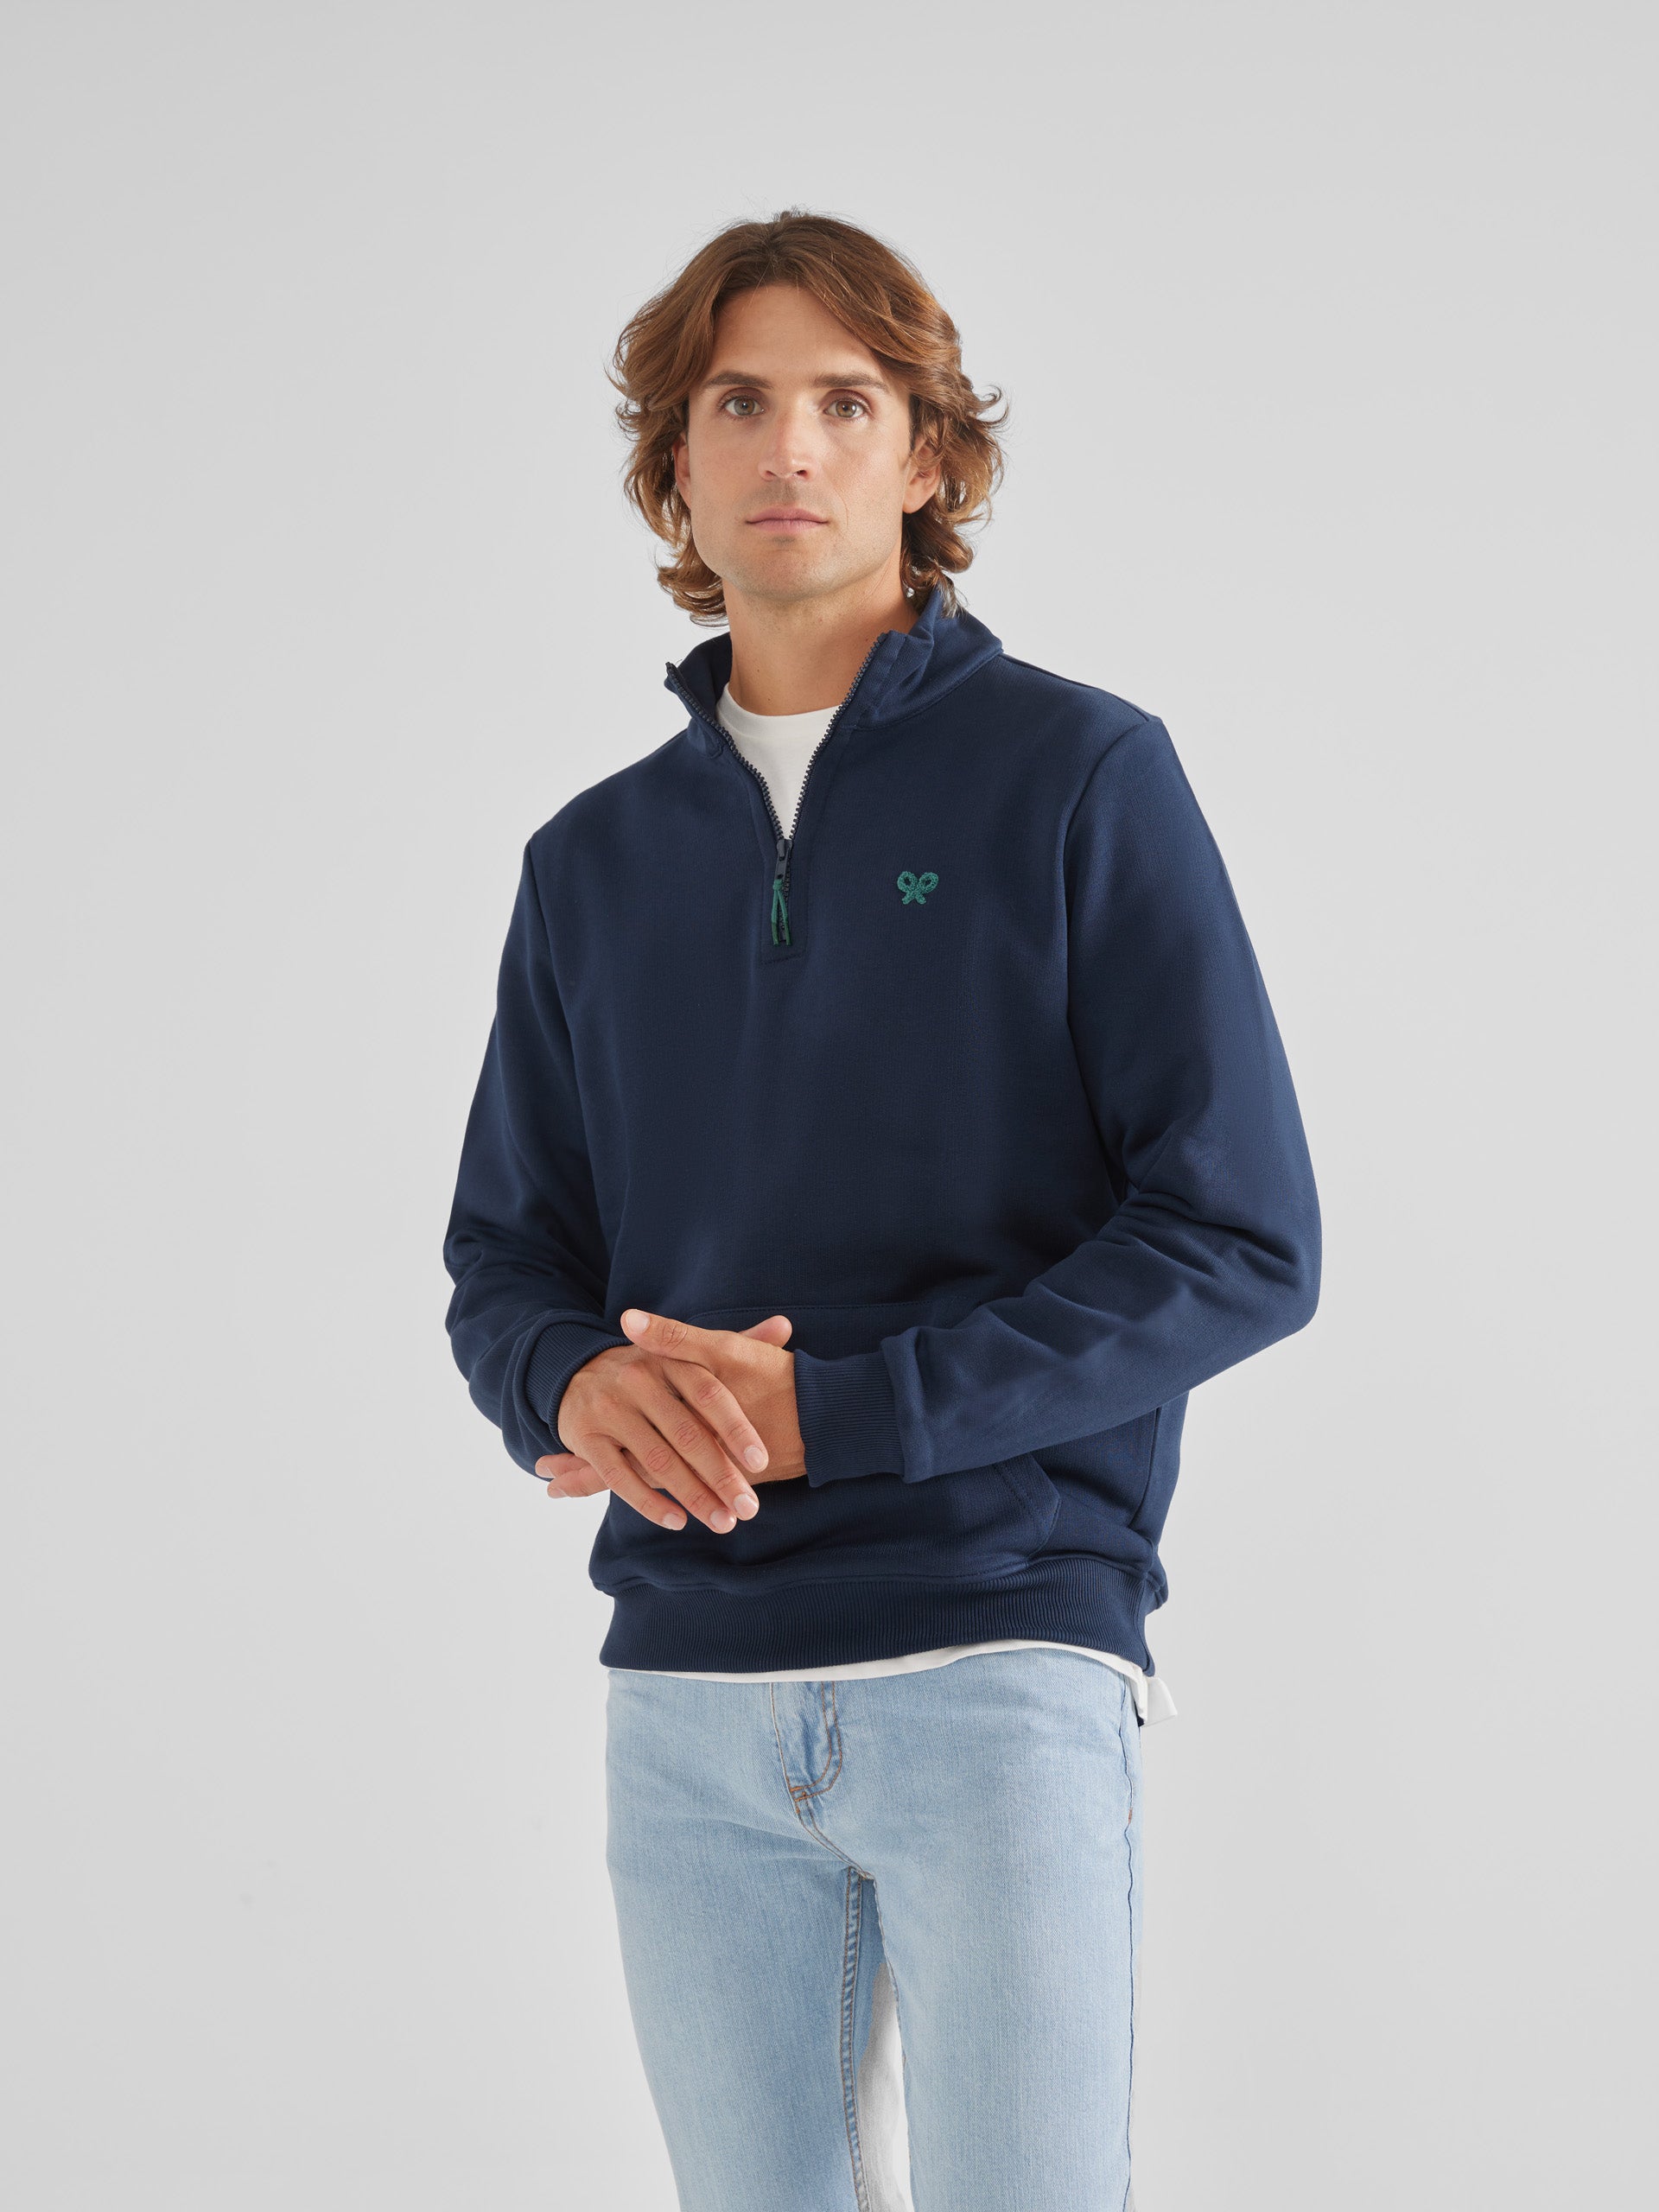 Navy blue half-zip sweatshirt